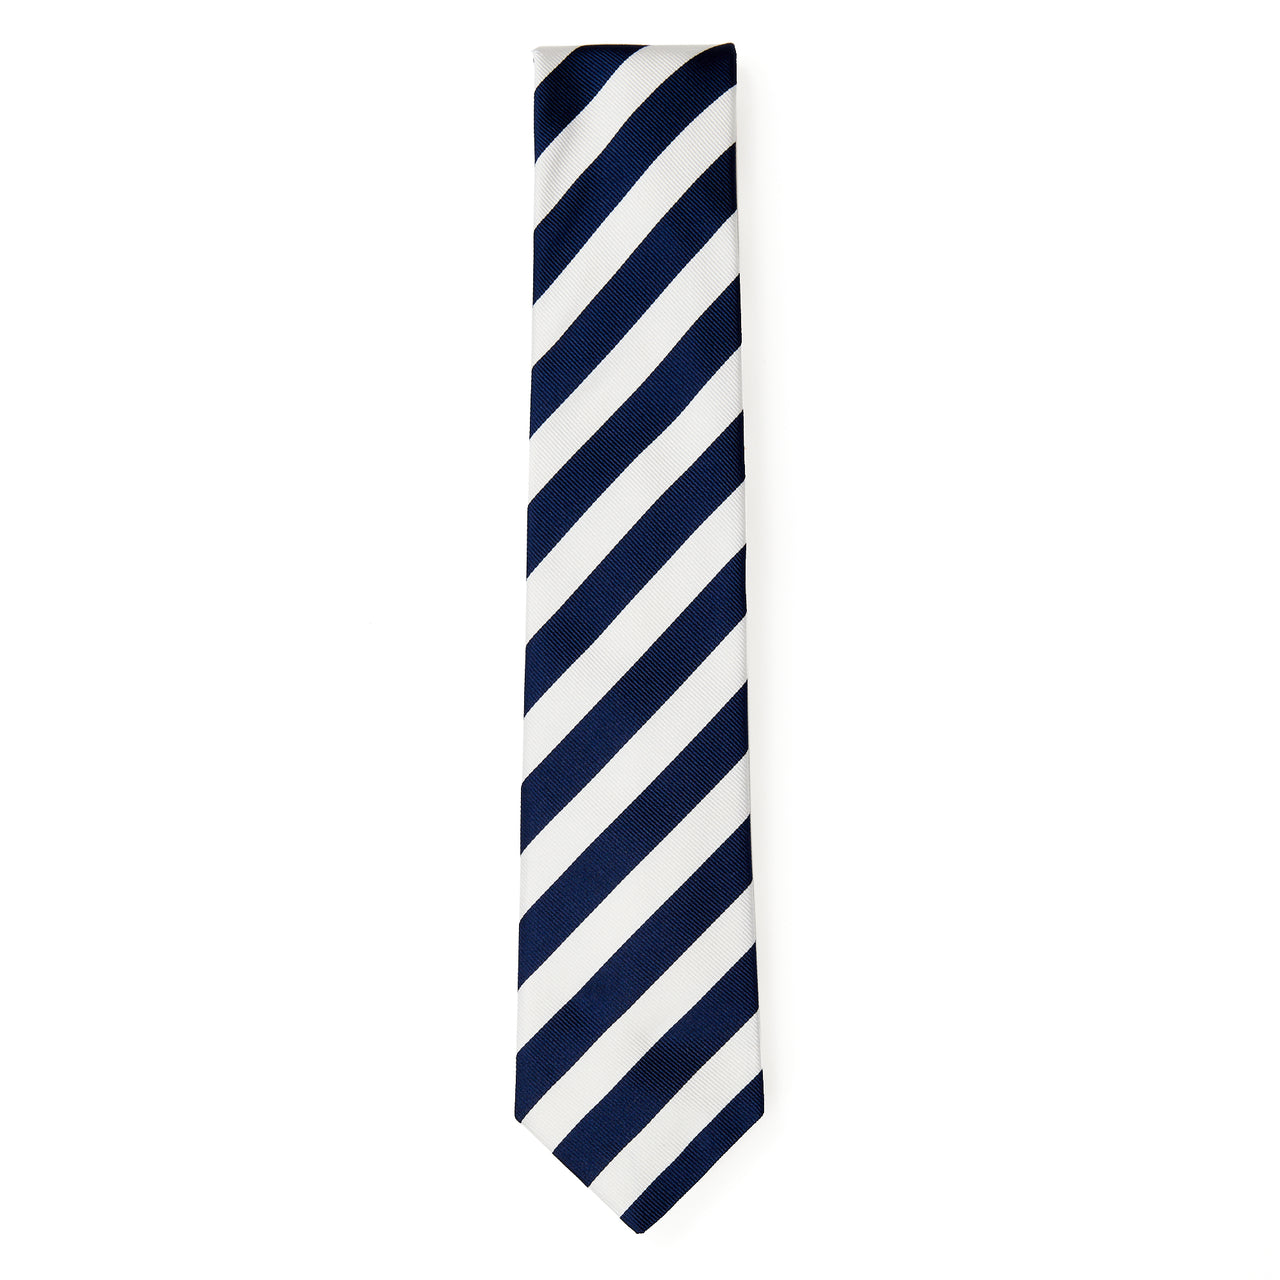 HENRY SARTORIAL x HEMLEY Stripe Tie NAVY/WHITE